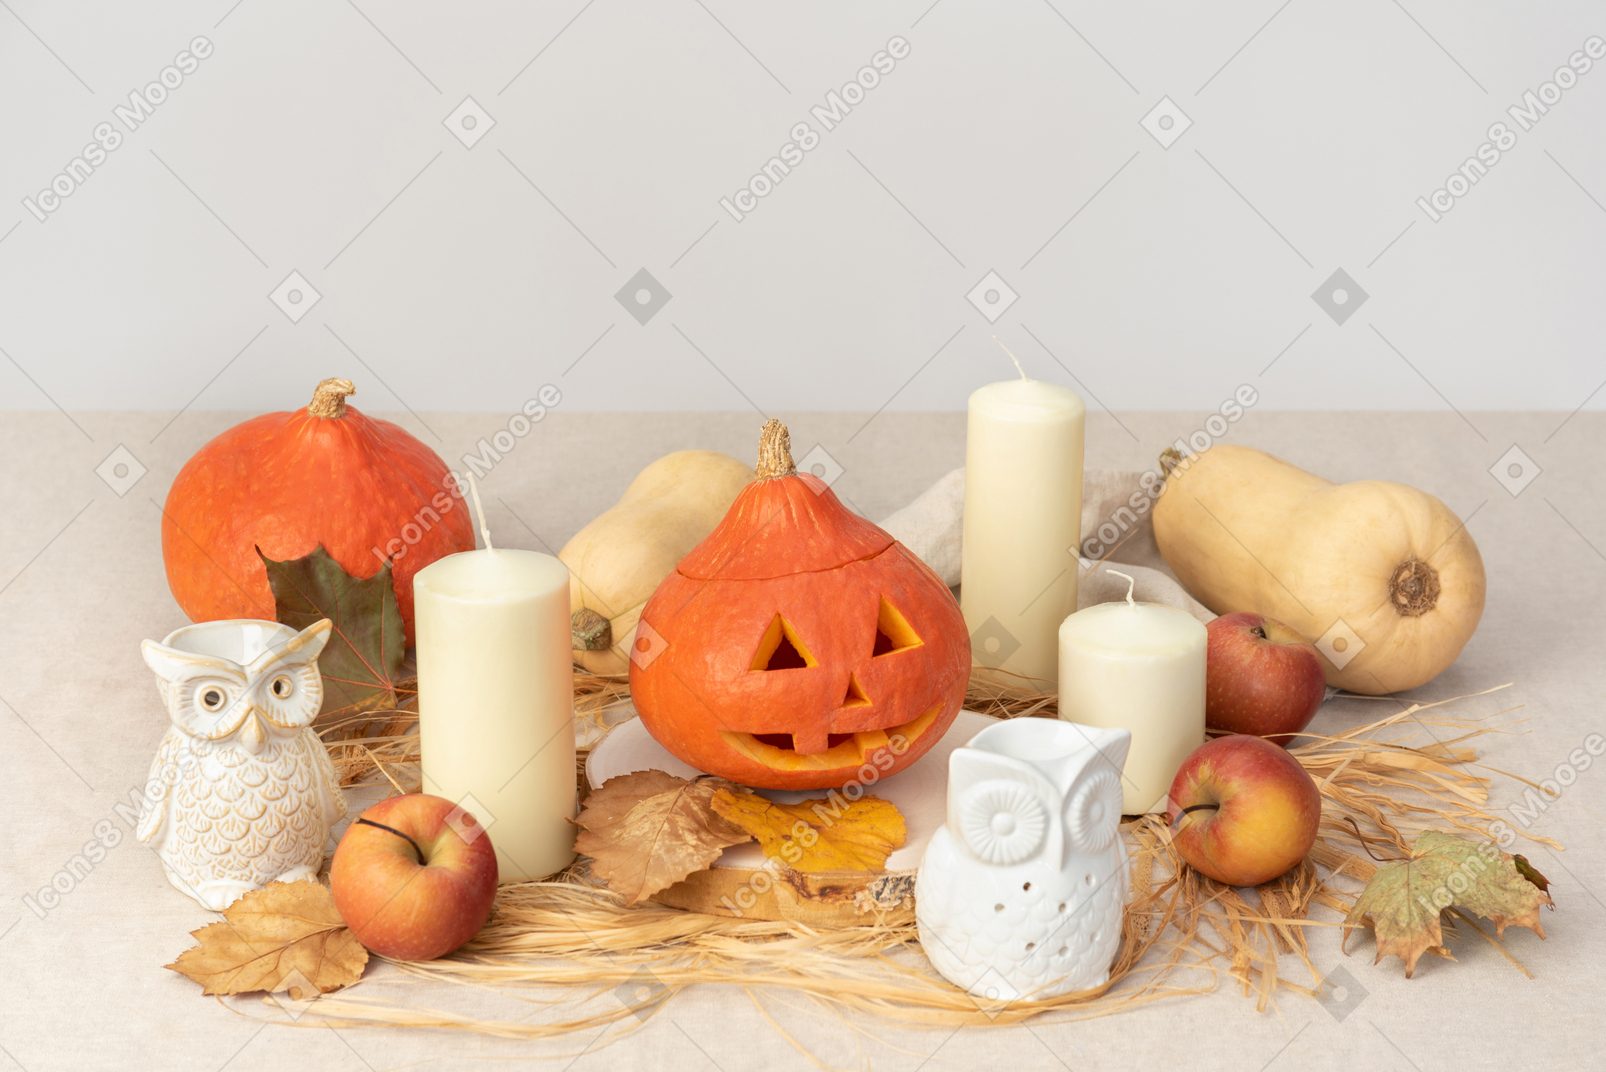 Zucche intagliate, figure di gufi, candele e mele rosse